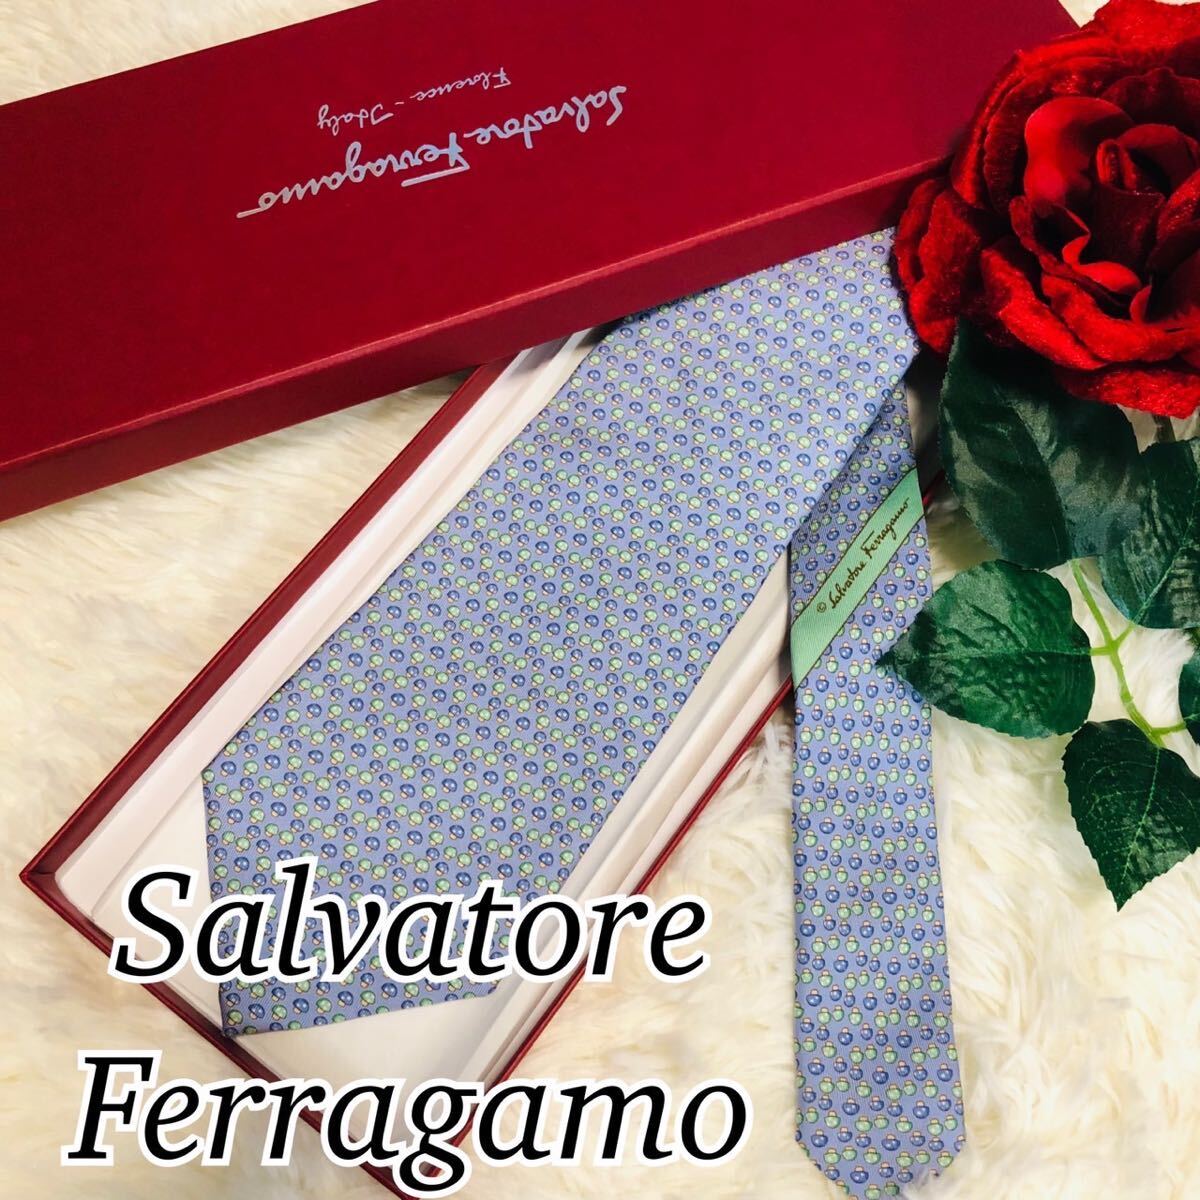 Salvatore Ferragamo サルヴァトーレフェラガモ メンズ 男性 紳士 ネクタイ 総柄 人気カラー 定番色 シンプル 水色 美品 剣先 9.5cmの画像1